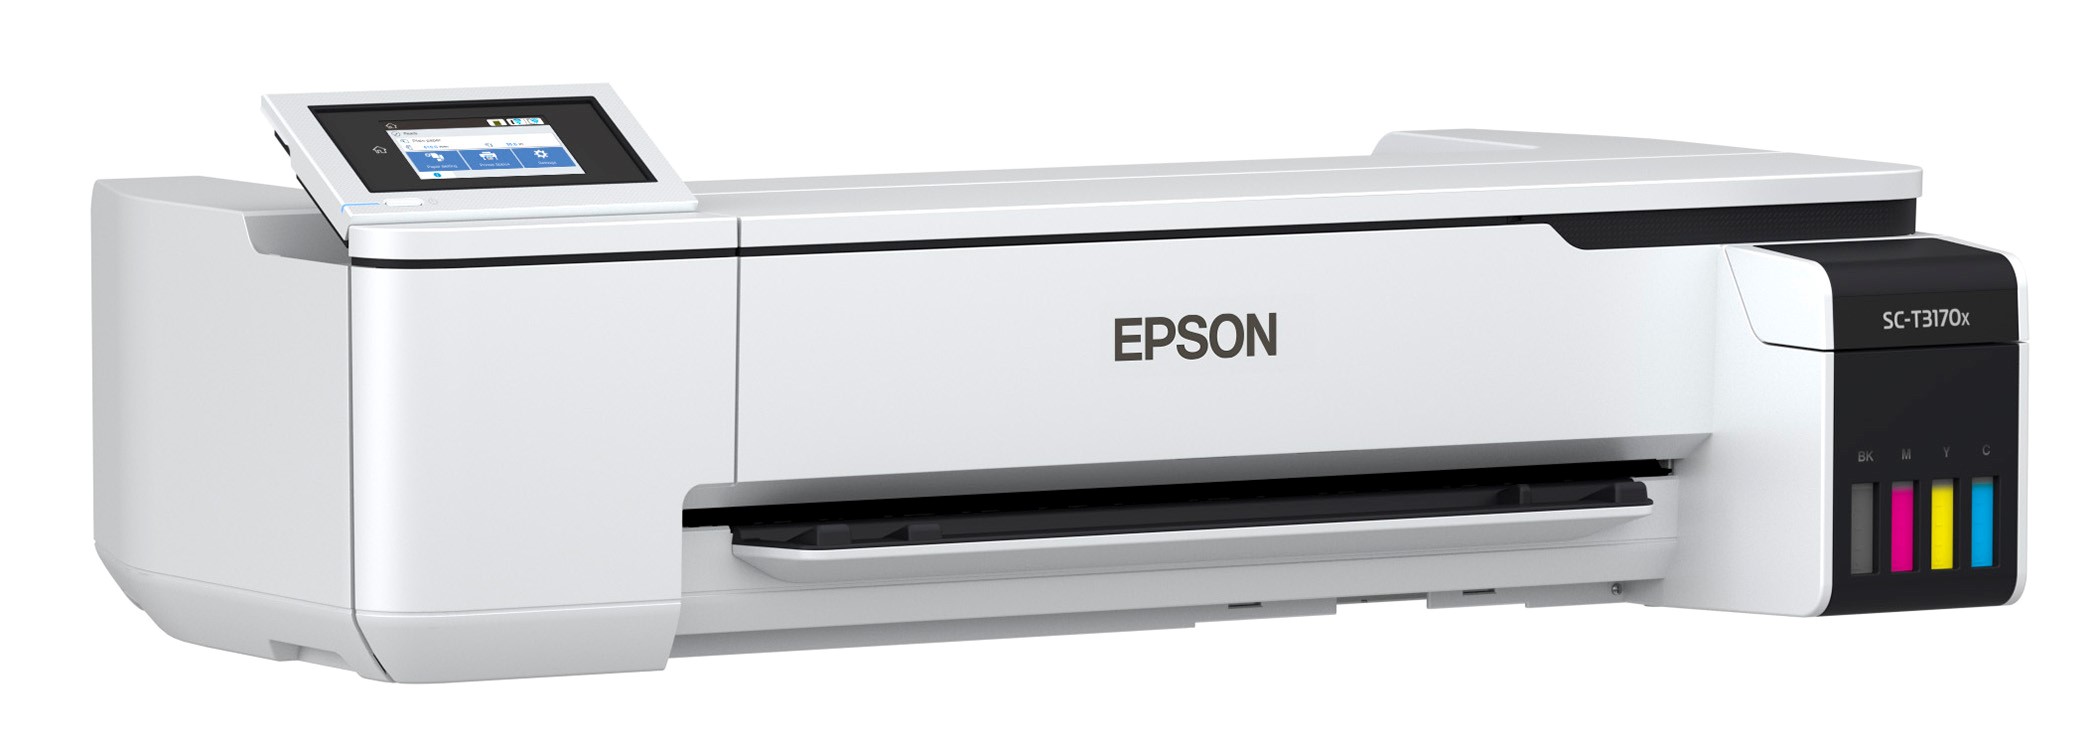 Epson presentará en la XVI Expoconstrucción Expodiseño 2021 que se realizará del 23 al 28 de noviembre en Corferias, un completo portafolio de sus impresoras en gran formato SureColor.